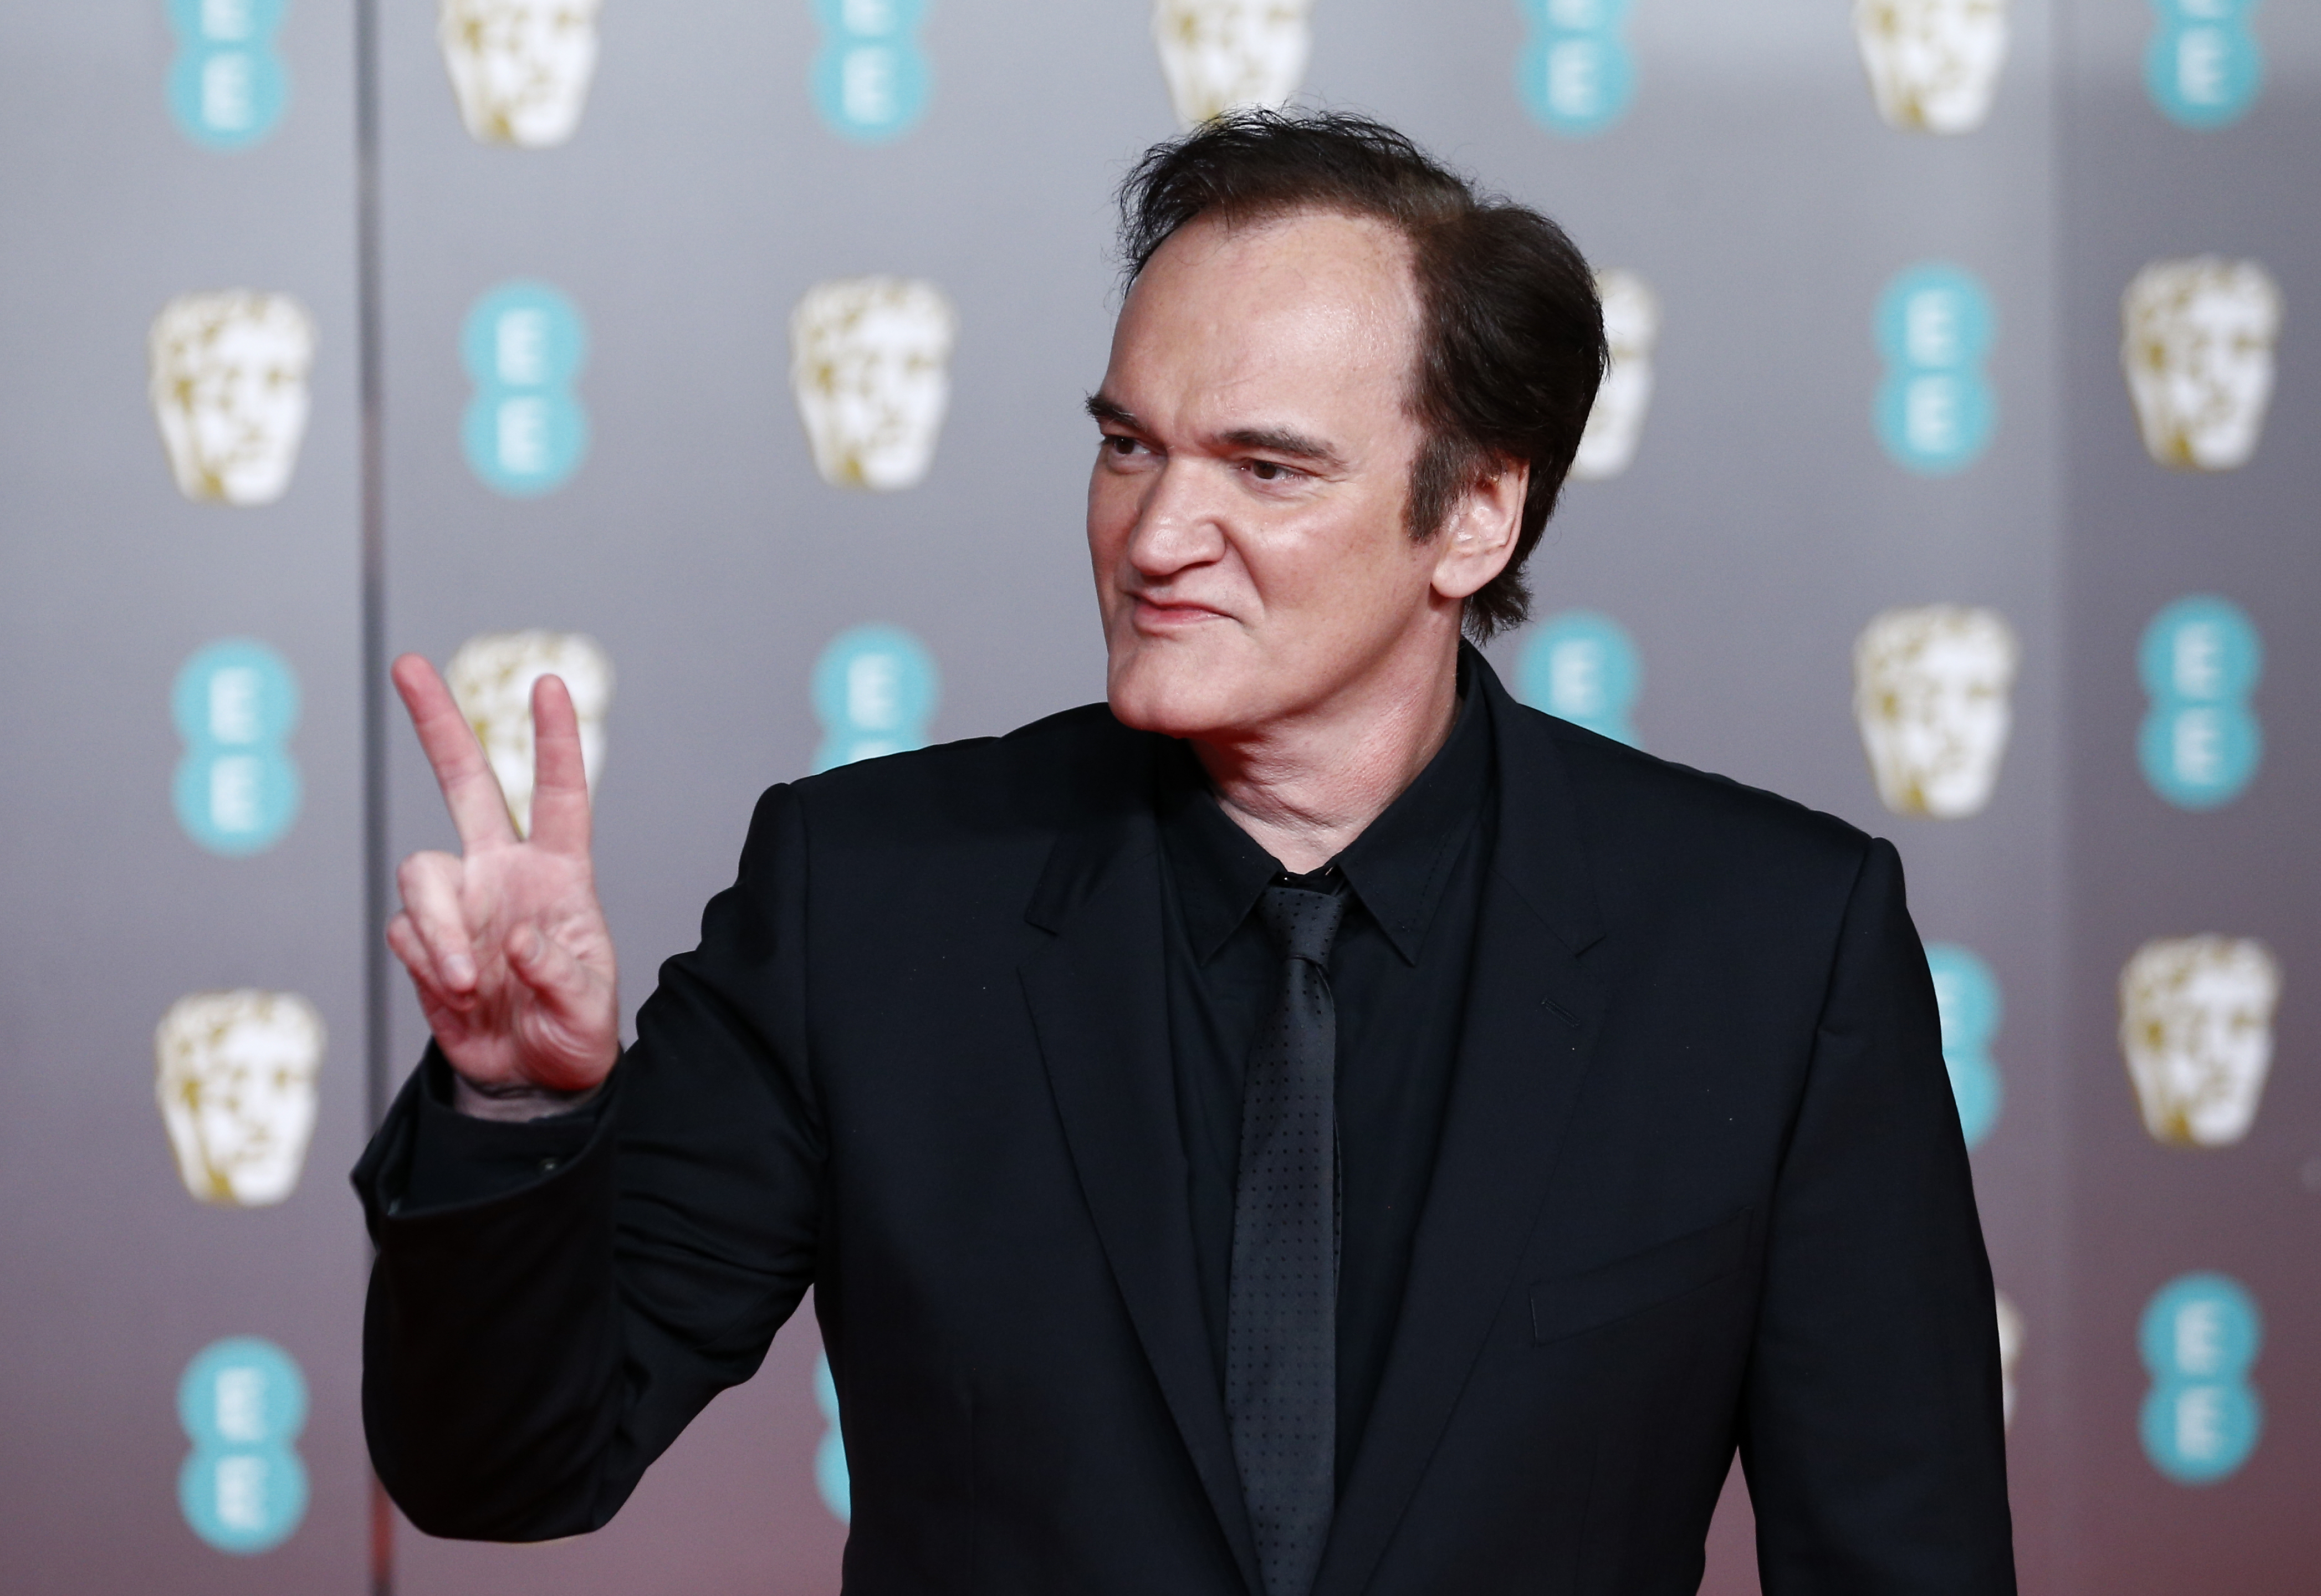 La razón por la que Tarantino no quiso a Johnny Depp en “Pulp Fiction" (Reuters)